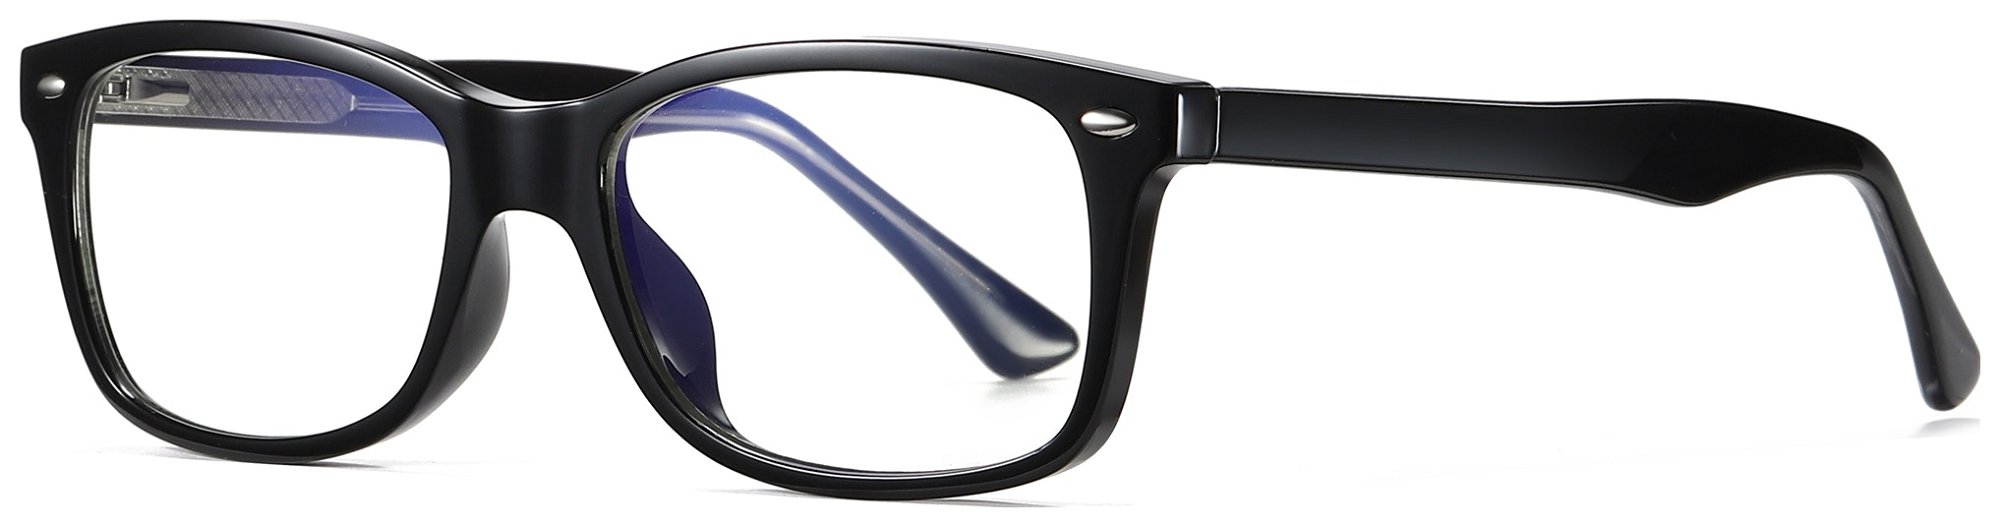 Regulær bluelight briller til kvinder, Enjoy by Kaleu (H: 5,3 cm. x B: 1,8 cm. x L: 14,5 cm., Sort)